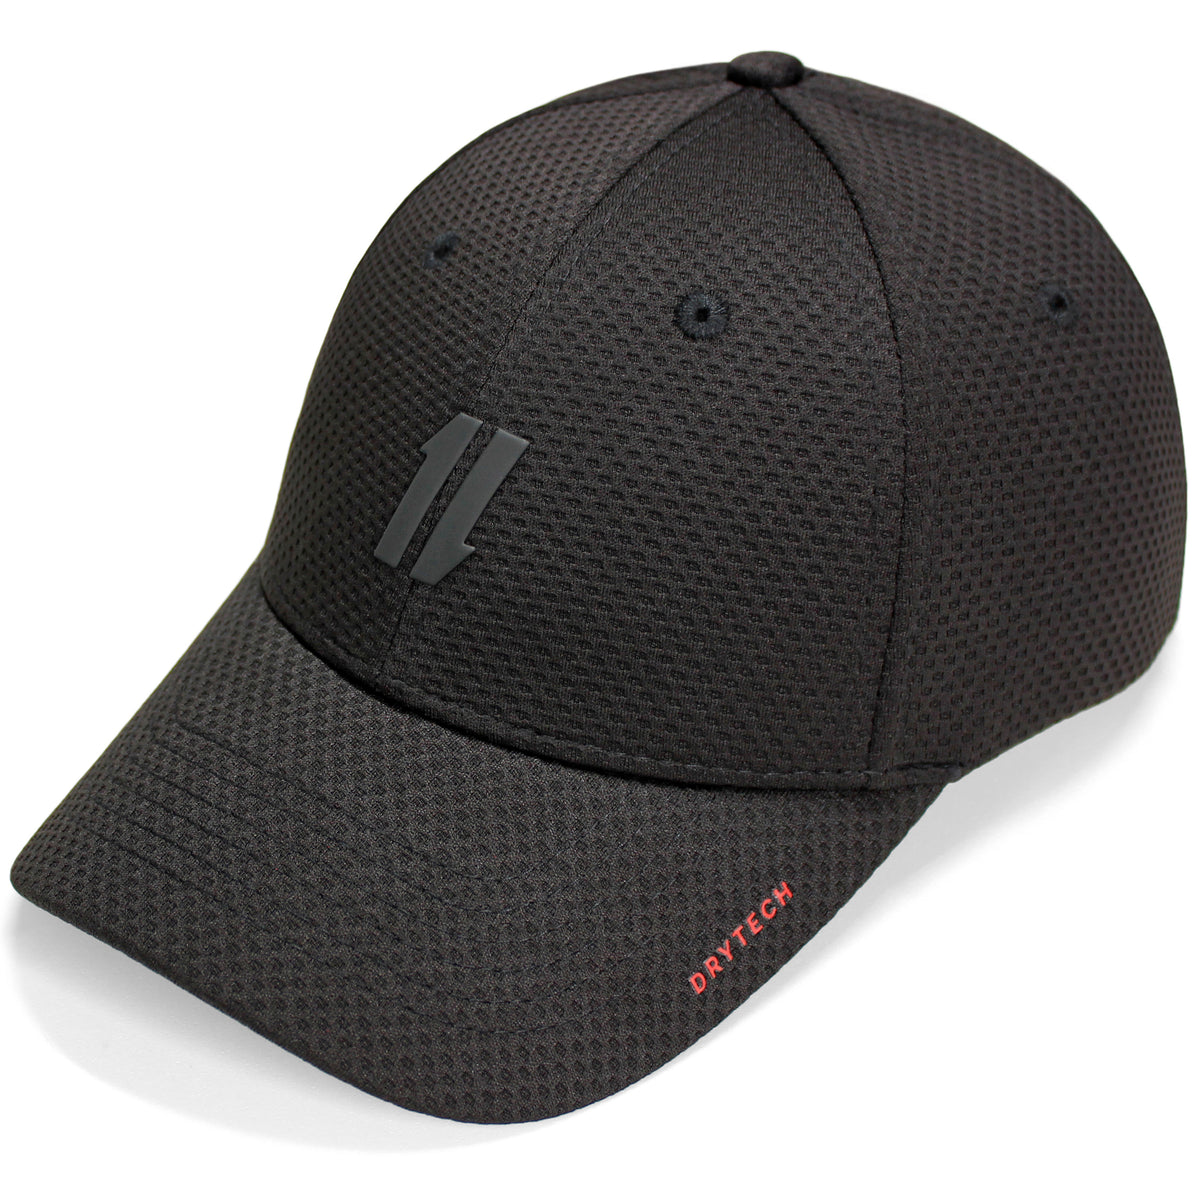 Mens Workout Hat - The Last Rep - Shop Athletic Hat, Gym Hat for Men Black / S/M